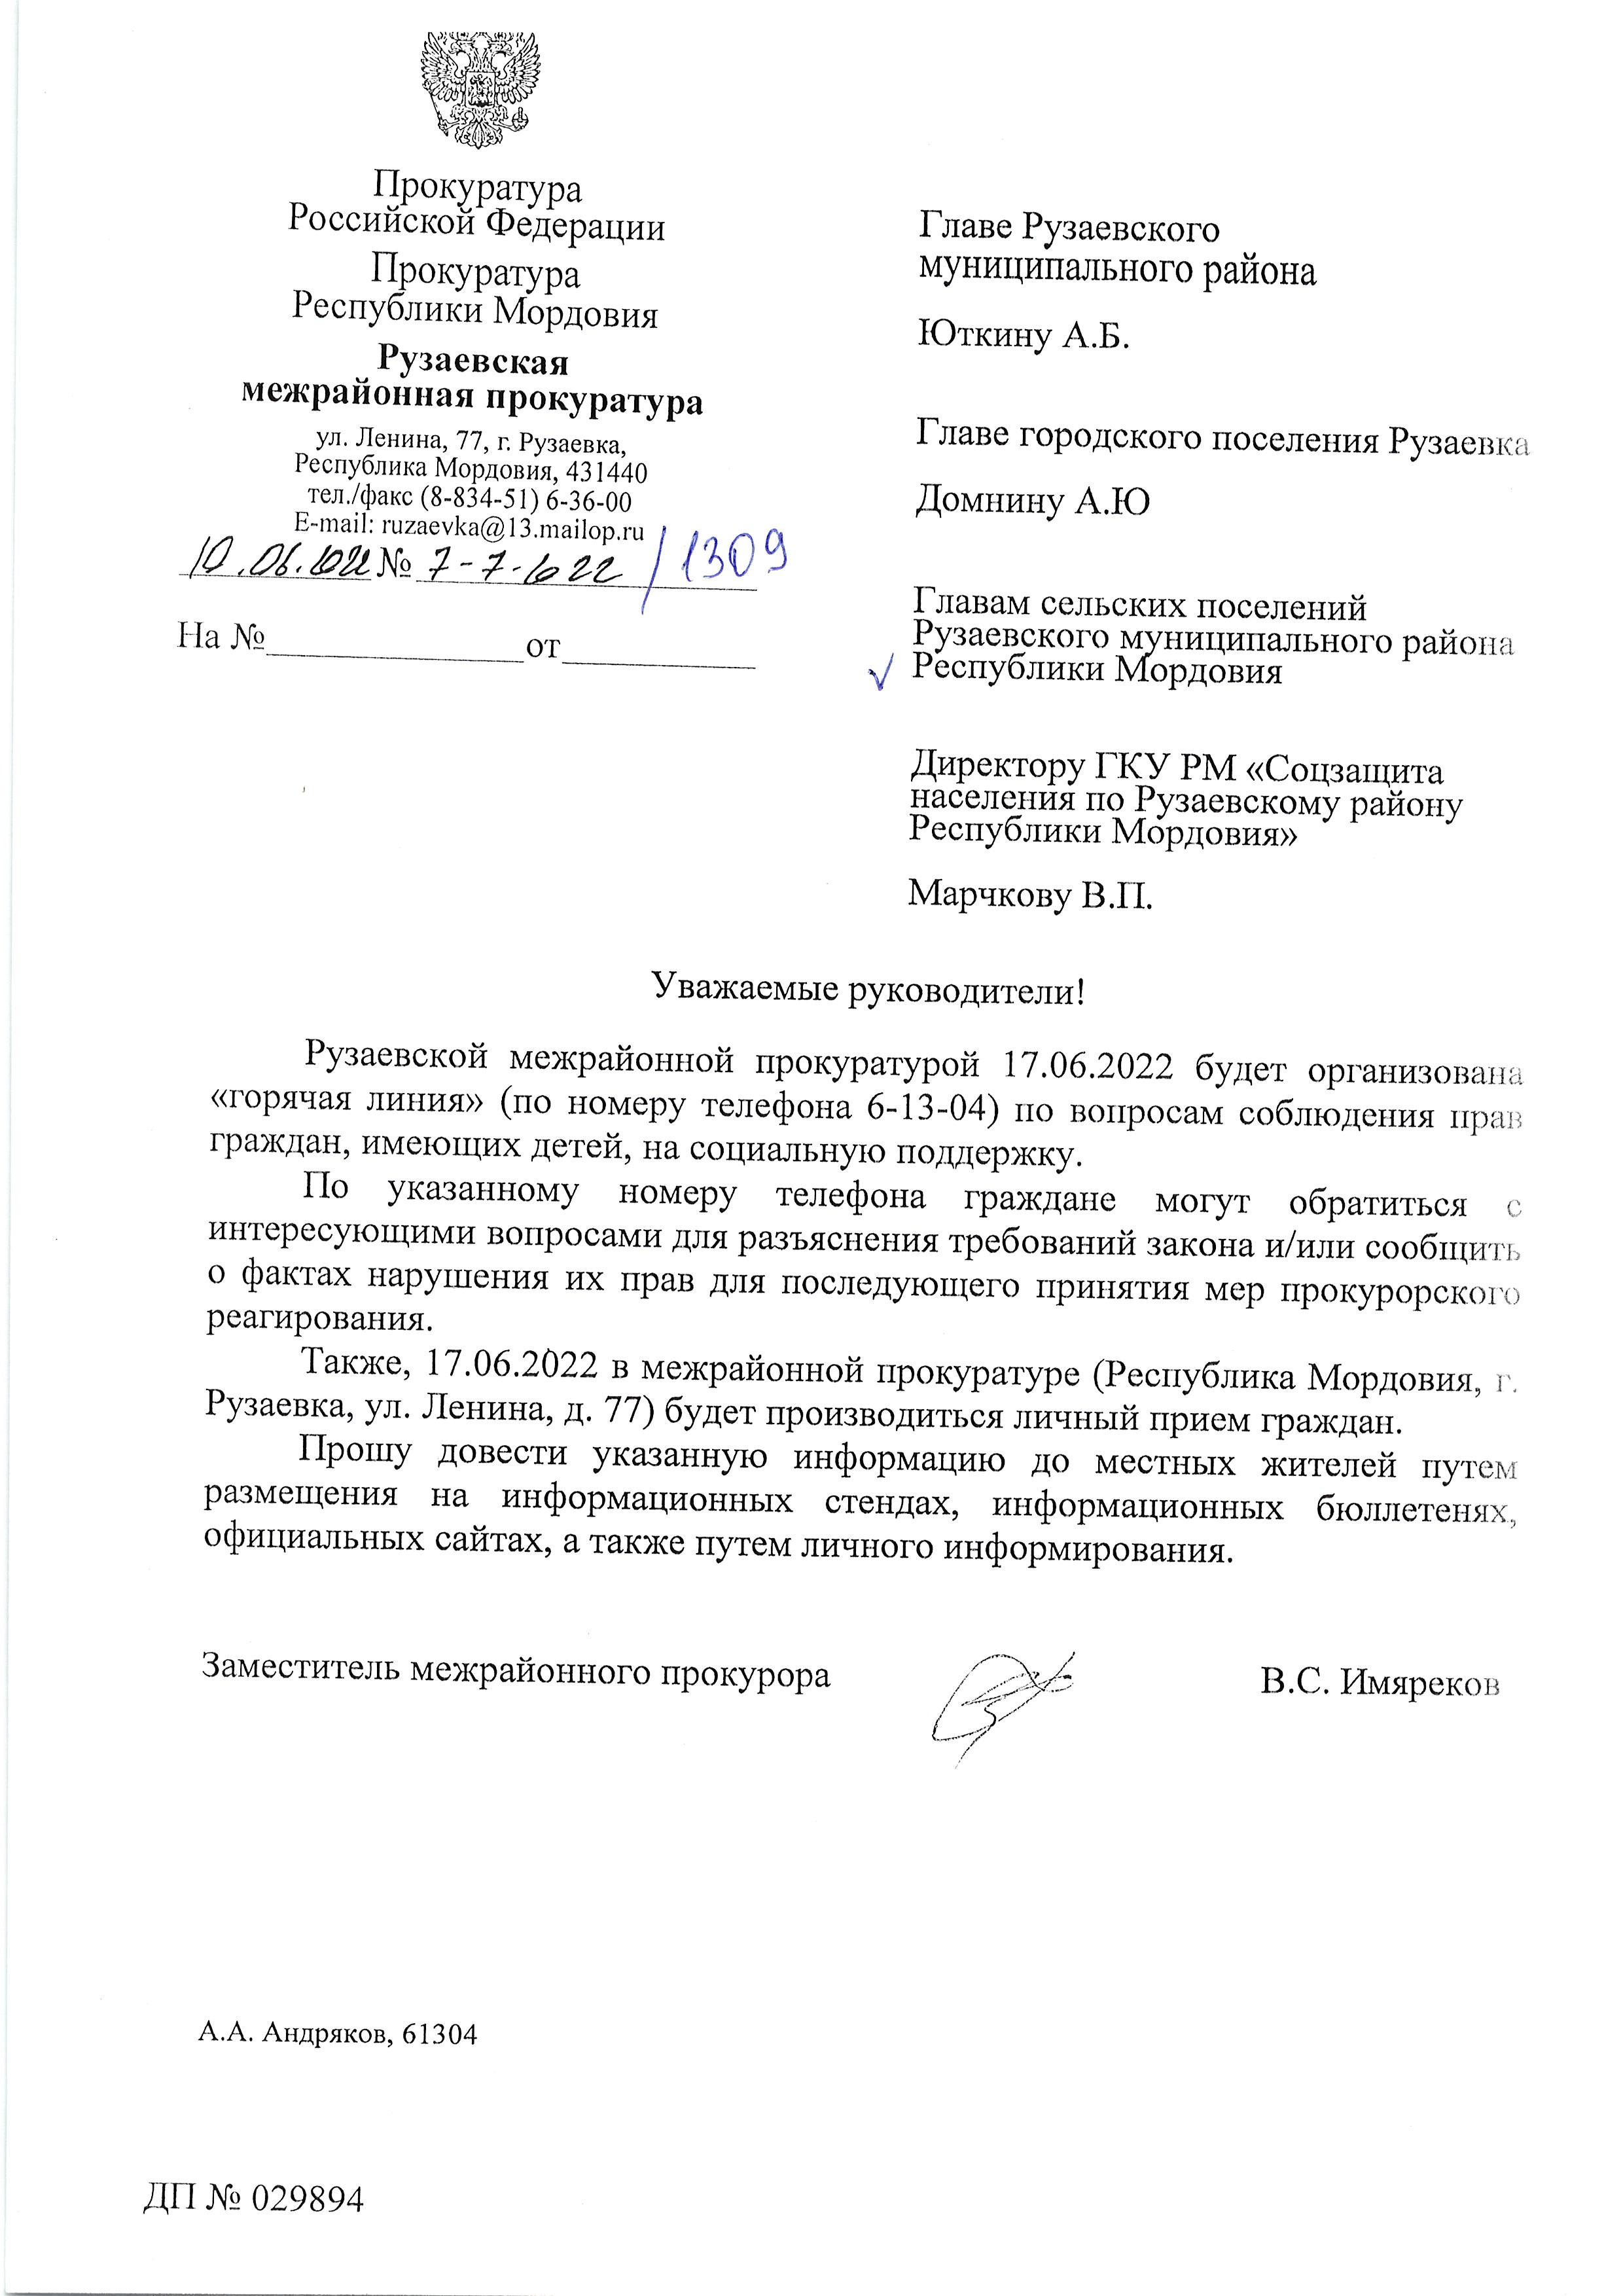 Рузаевской межрайонной прокуратурой 17.06.2022г. будет организована "горячая линия" (по номеру телефона 6-13-04) по вопросам соблюдения прав граждан, имеющих детей, на социальную поддержку